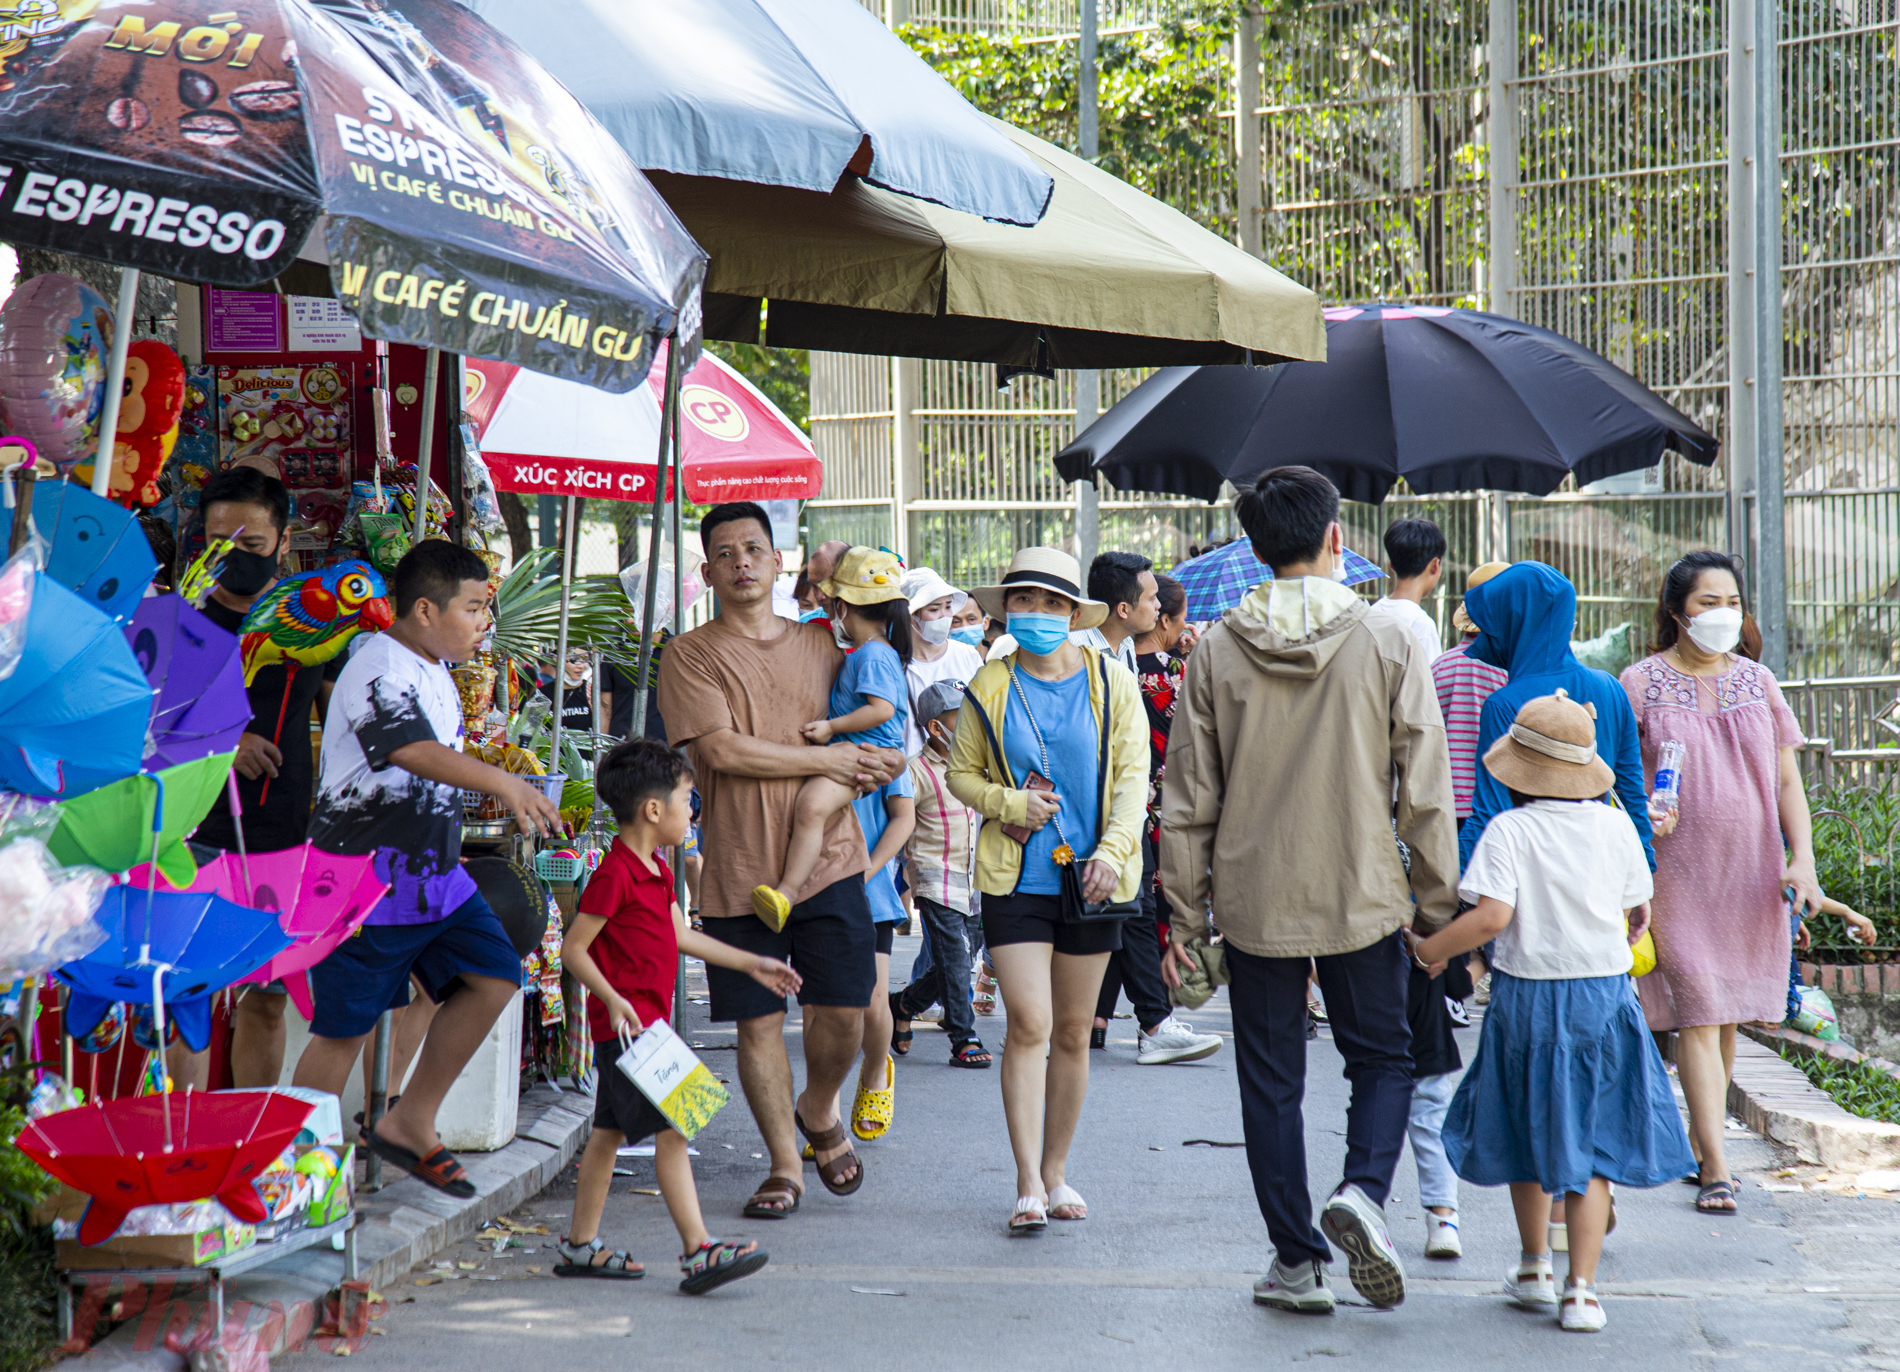 Ghi nhận của PV ngày 2/9, nhiều gia đình đã chọn công viên Thủ Lệ (Hà Nội) làm địa điểm vui chơi dịp nghỉ lễ Quốc Khánh 2/9. Ngay từ buổi sáng, khu vực này luôn đông nghịt người.